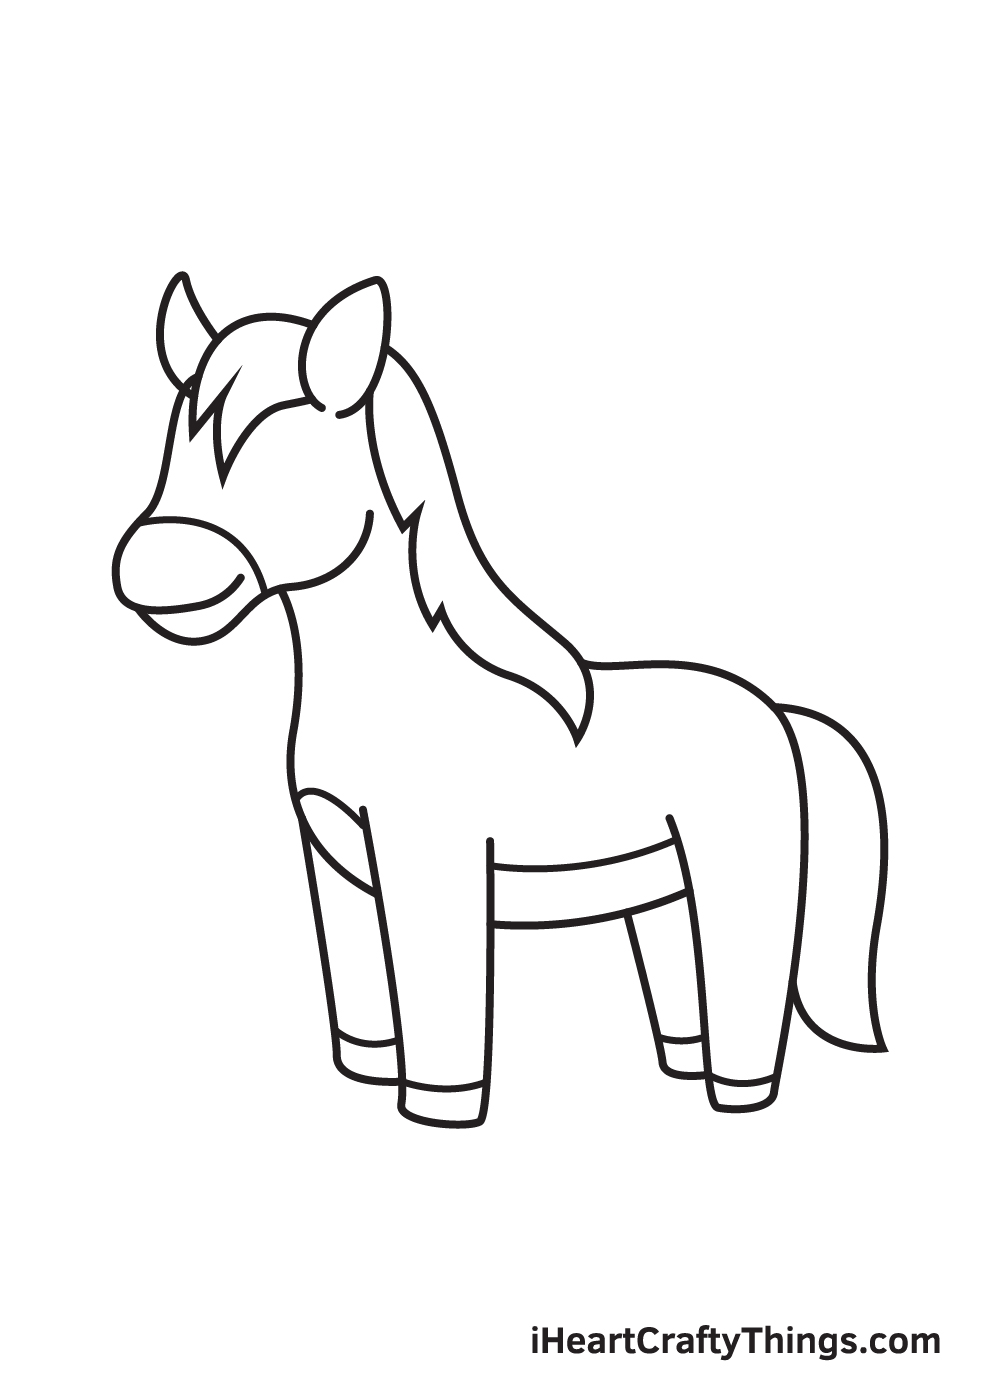 Một Con Ngựa Đầu Ngựa Một Bản Vẽ Tay Và Phác Thảo Hình minh họa Sẵn có   Tải xuống Hình ảnh Ngay bây giờ  iStock